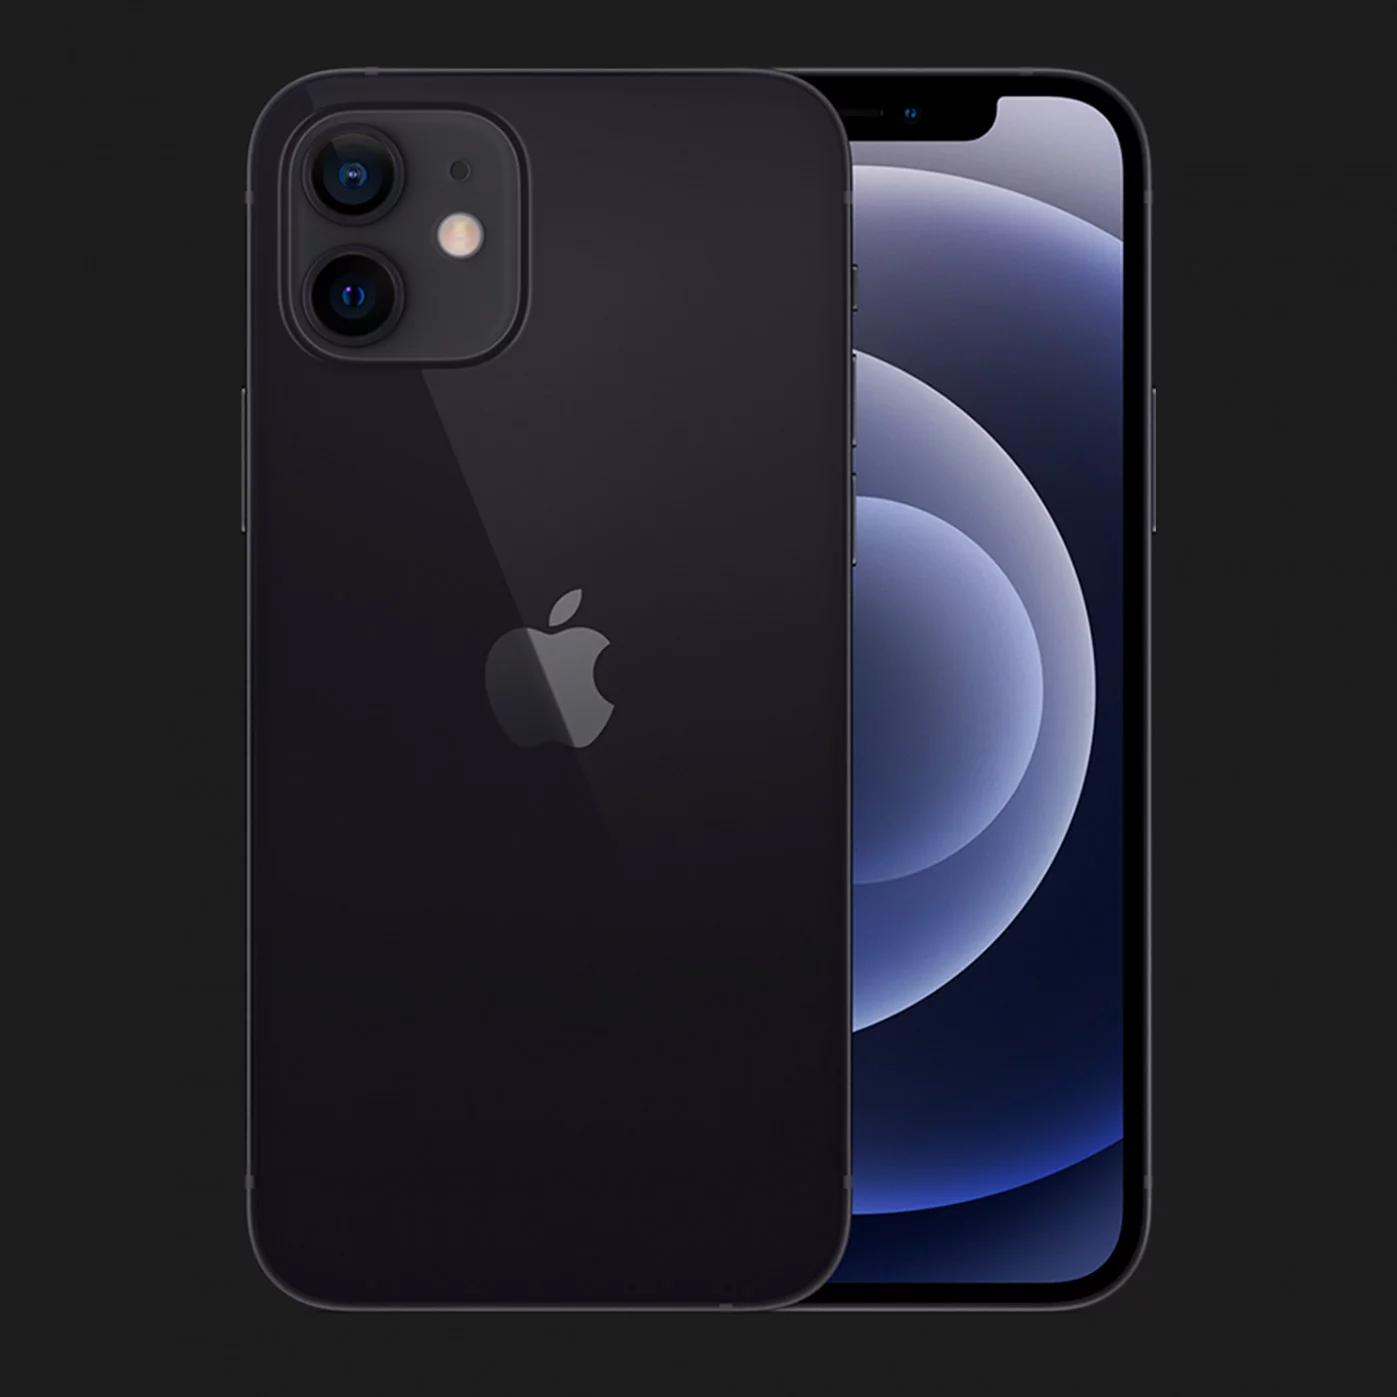 Купить Apple iPhone 12 mini 256GB (Black) — цены ⚡, отзывы ⚡,  характеристики — ЯБКО